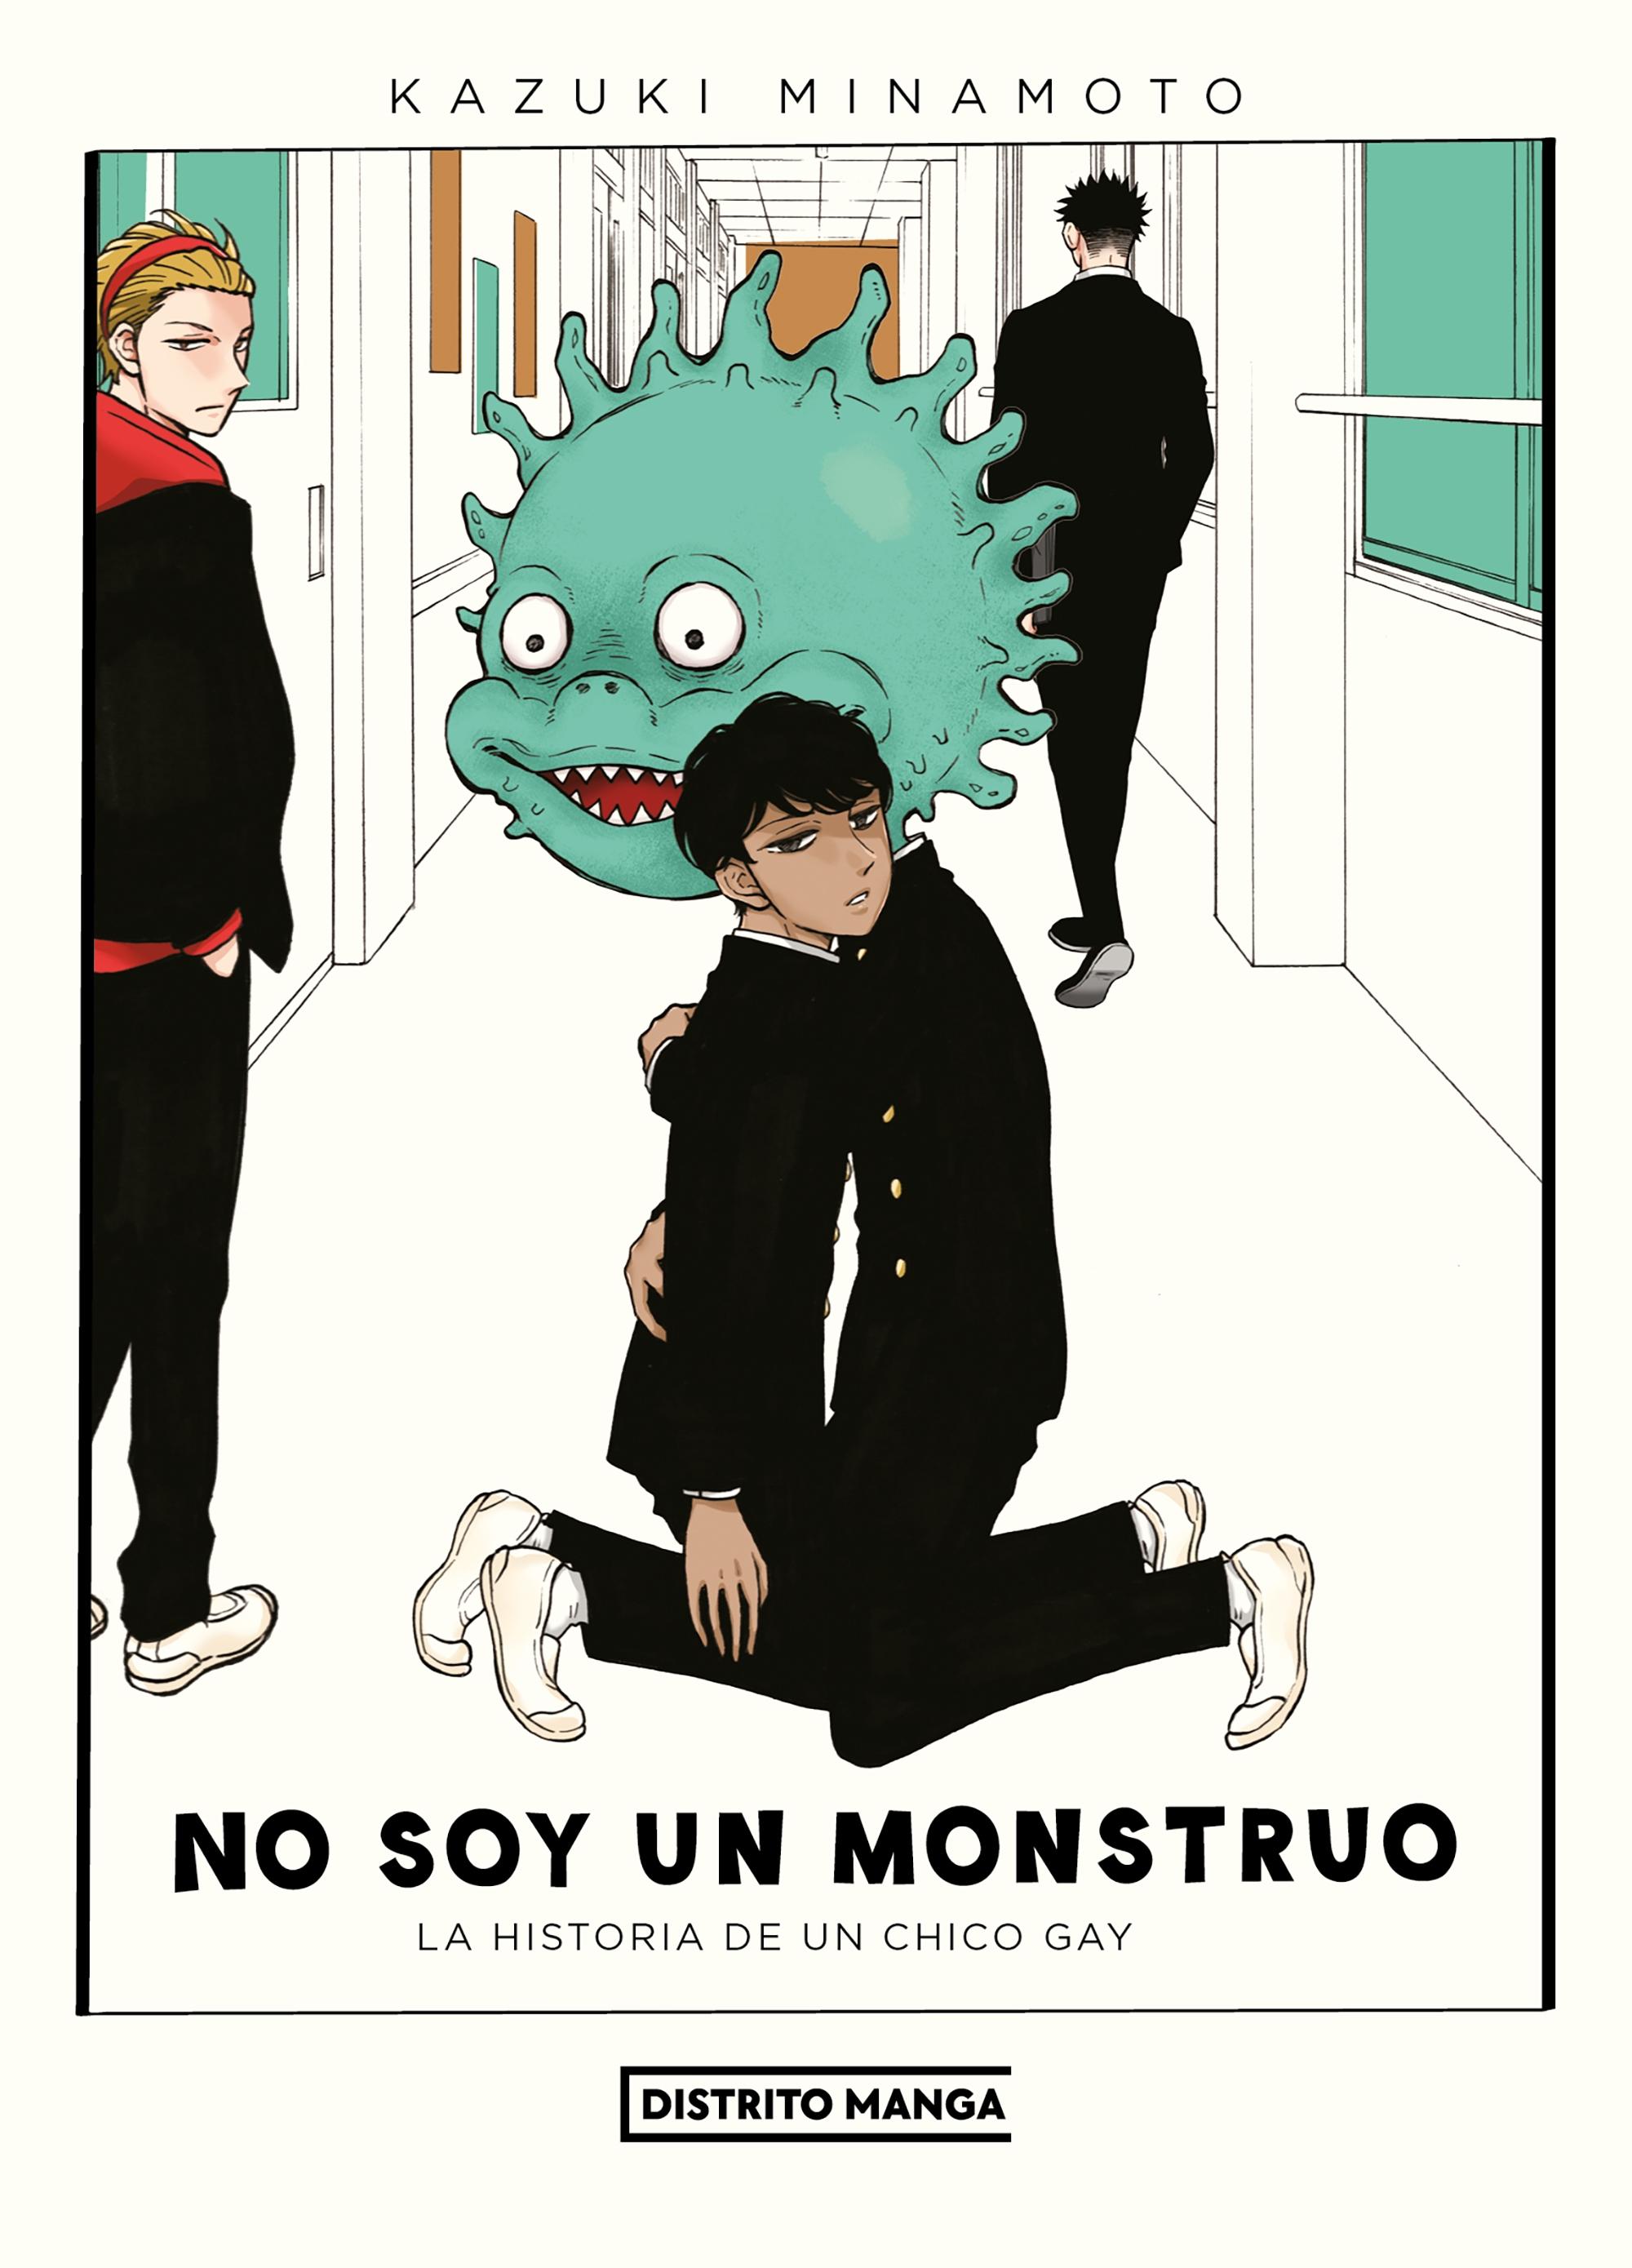 No Soy un Monstruo "La Historia de un Chico Gay". 